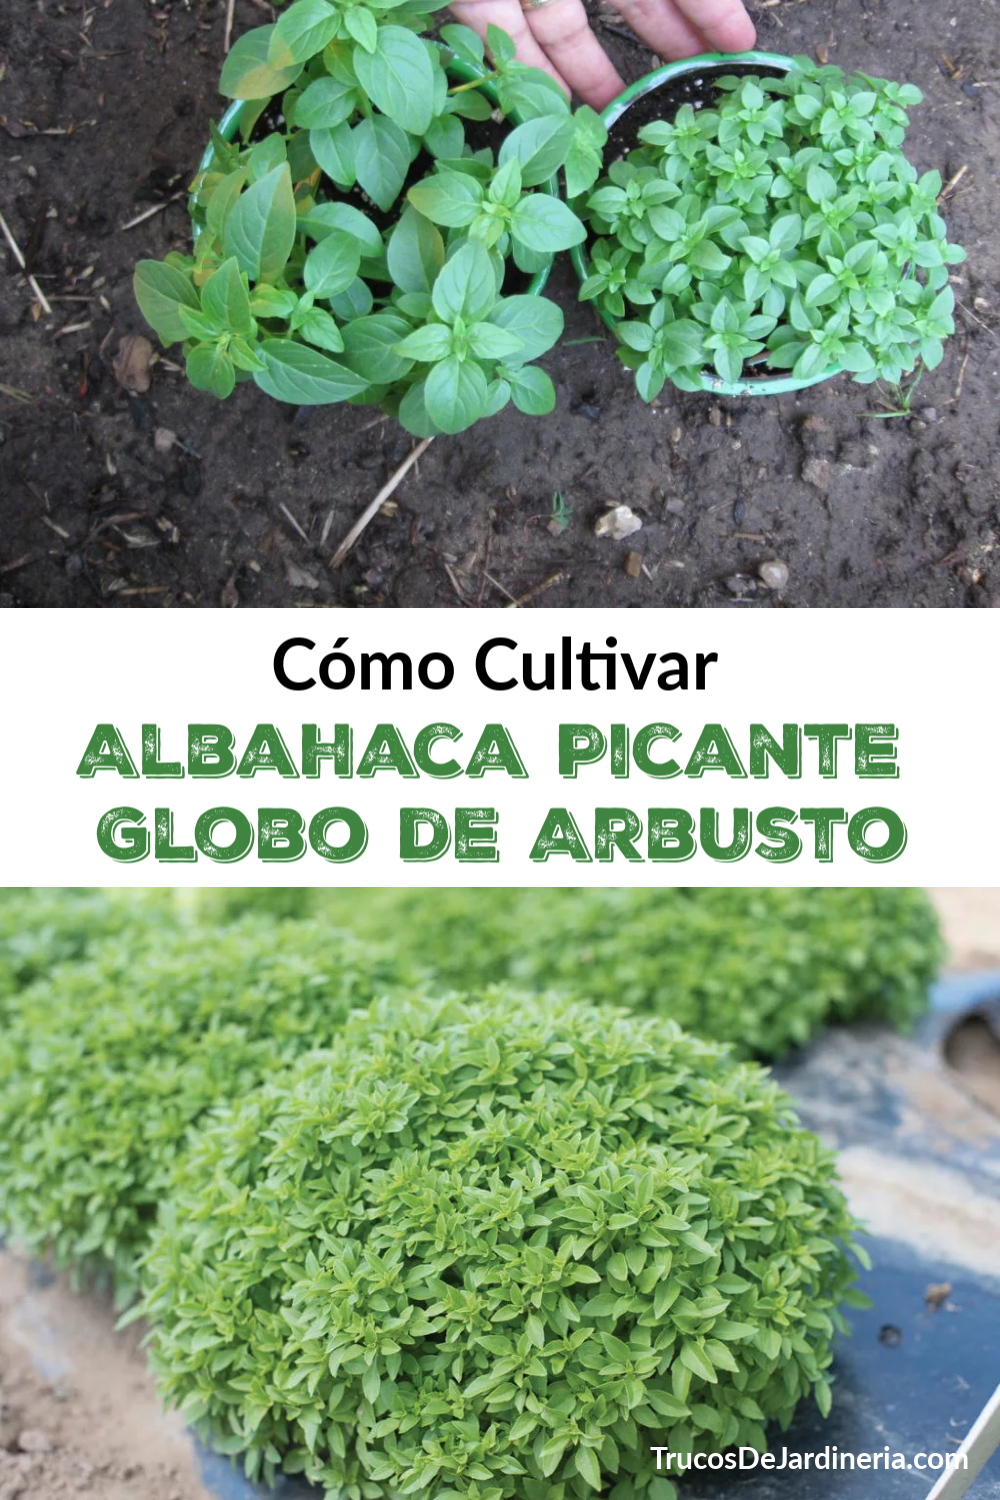 Cómo Cultivar Albahaca Picante Globo de Arbusto